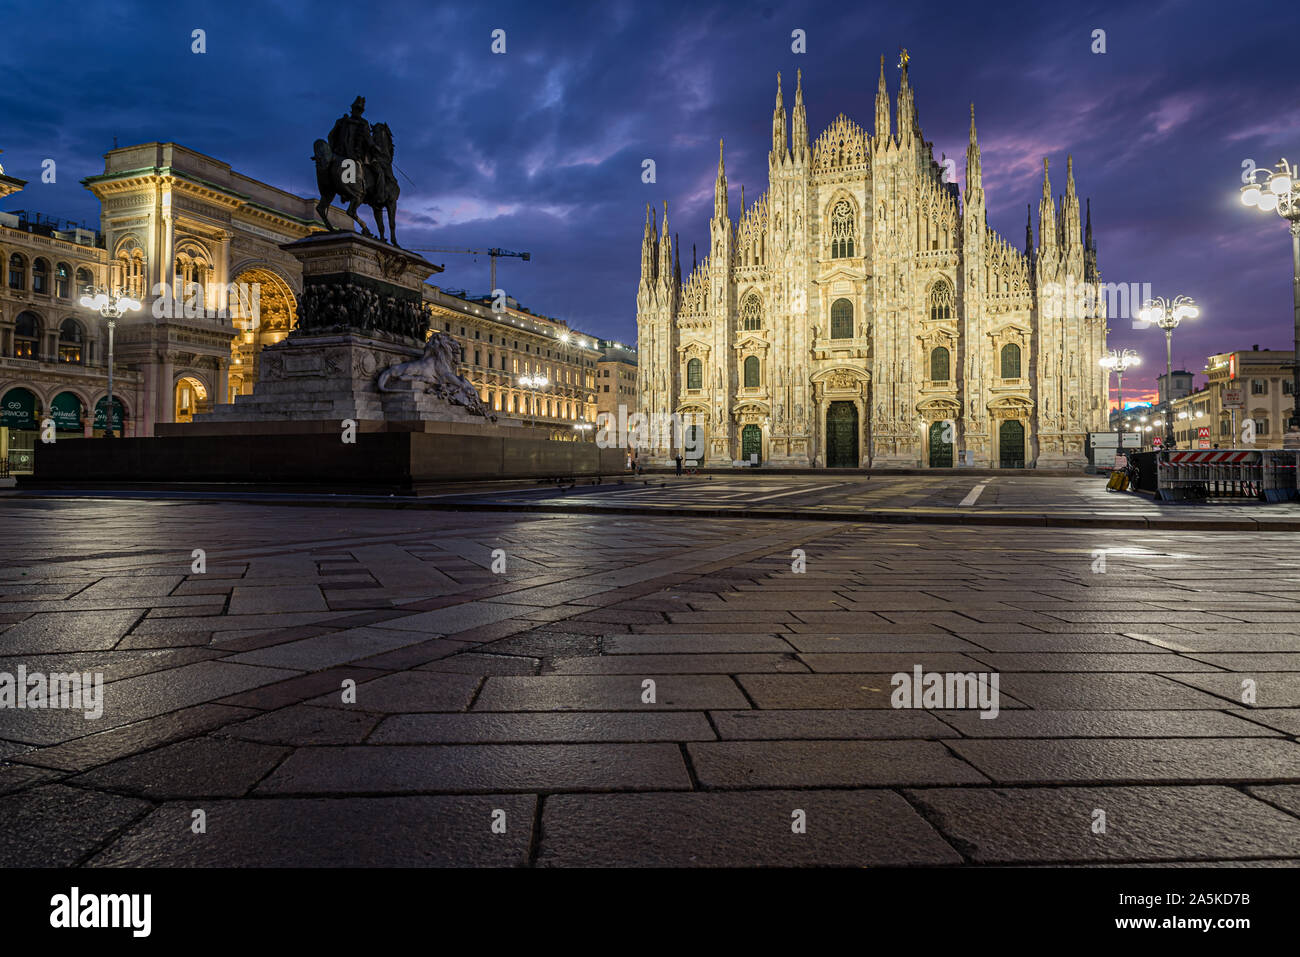 Amanecer en la Piazza del Duomo, incluyendo la catedral de Milán, Italia Foto de stock